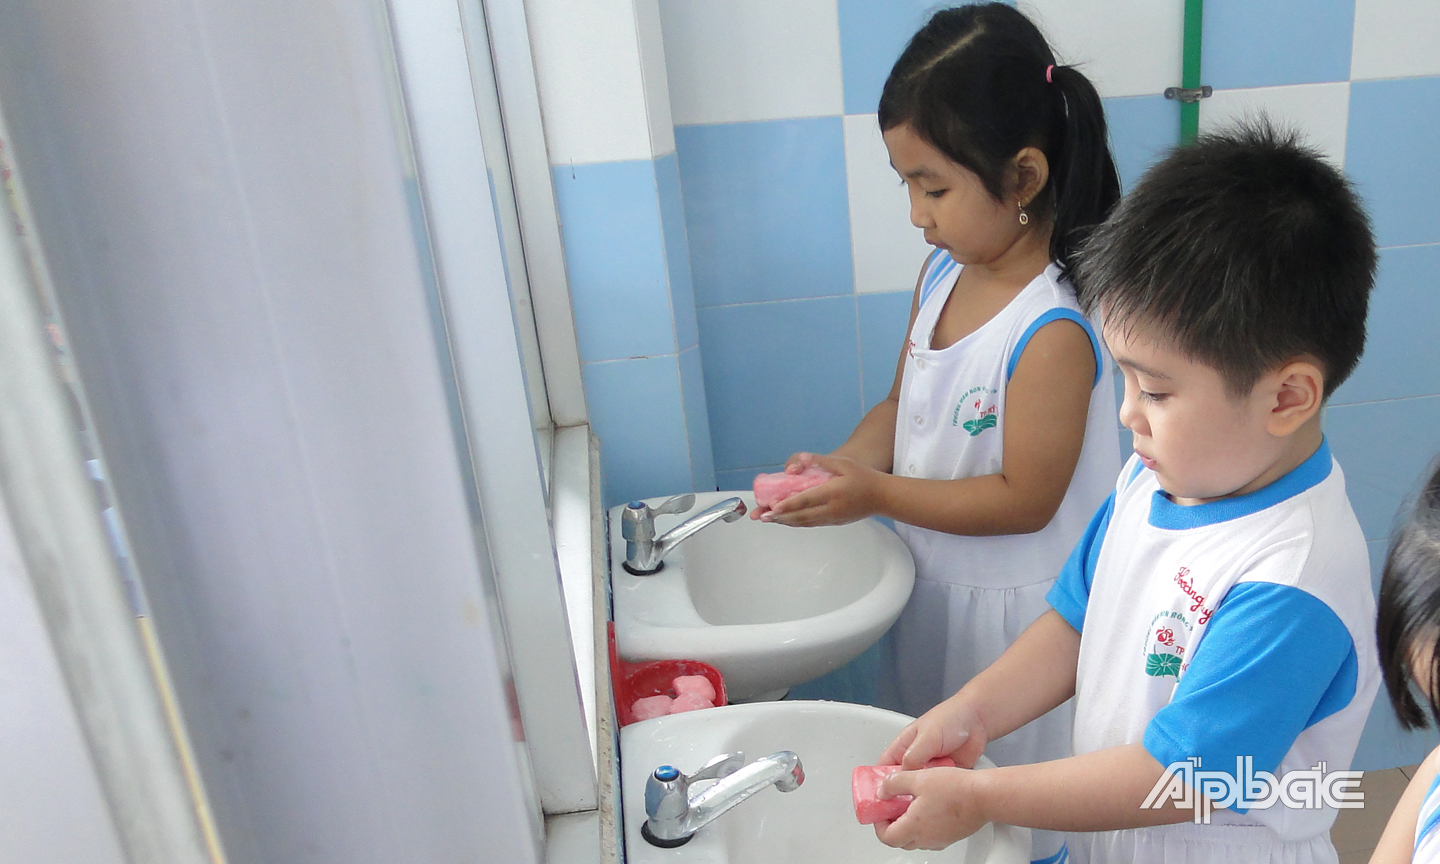 Hướng dẫn trẻ rửa tay đúng cách, thường xuyên dưới vòi nước chảy bằng xà phòng hoặc dung dịch sát khuẩn để phòng bệnh.